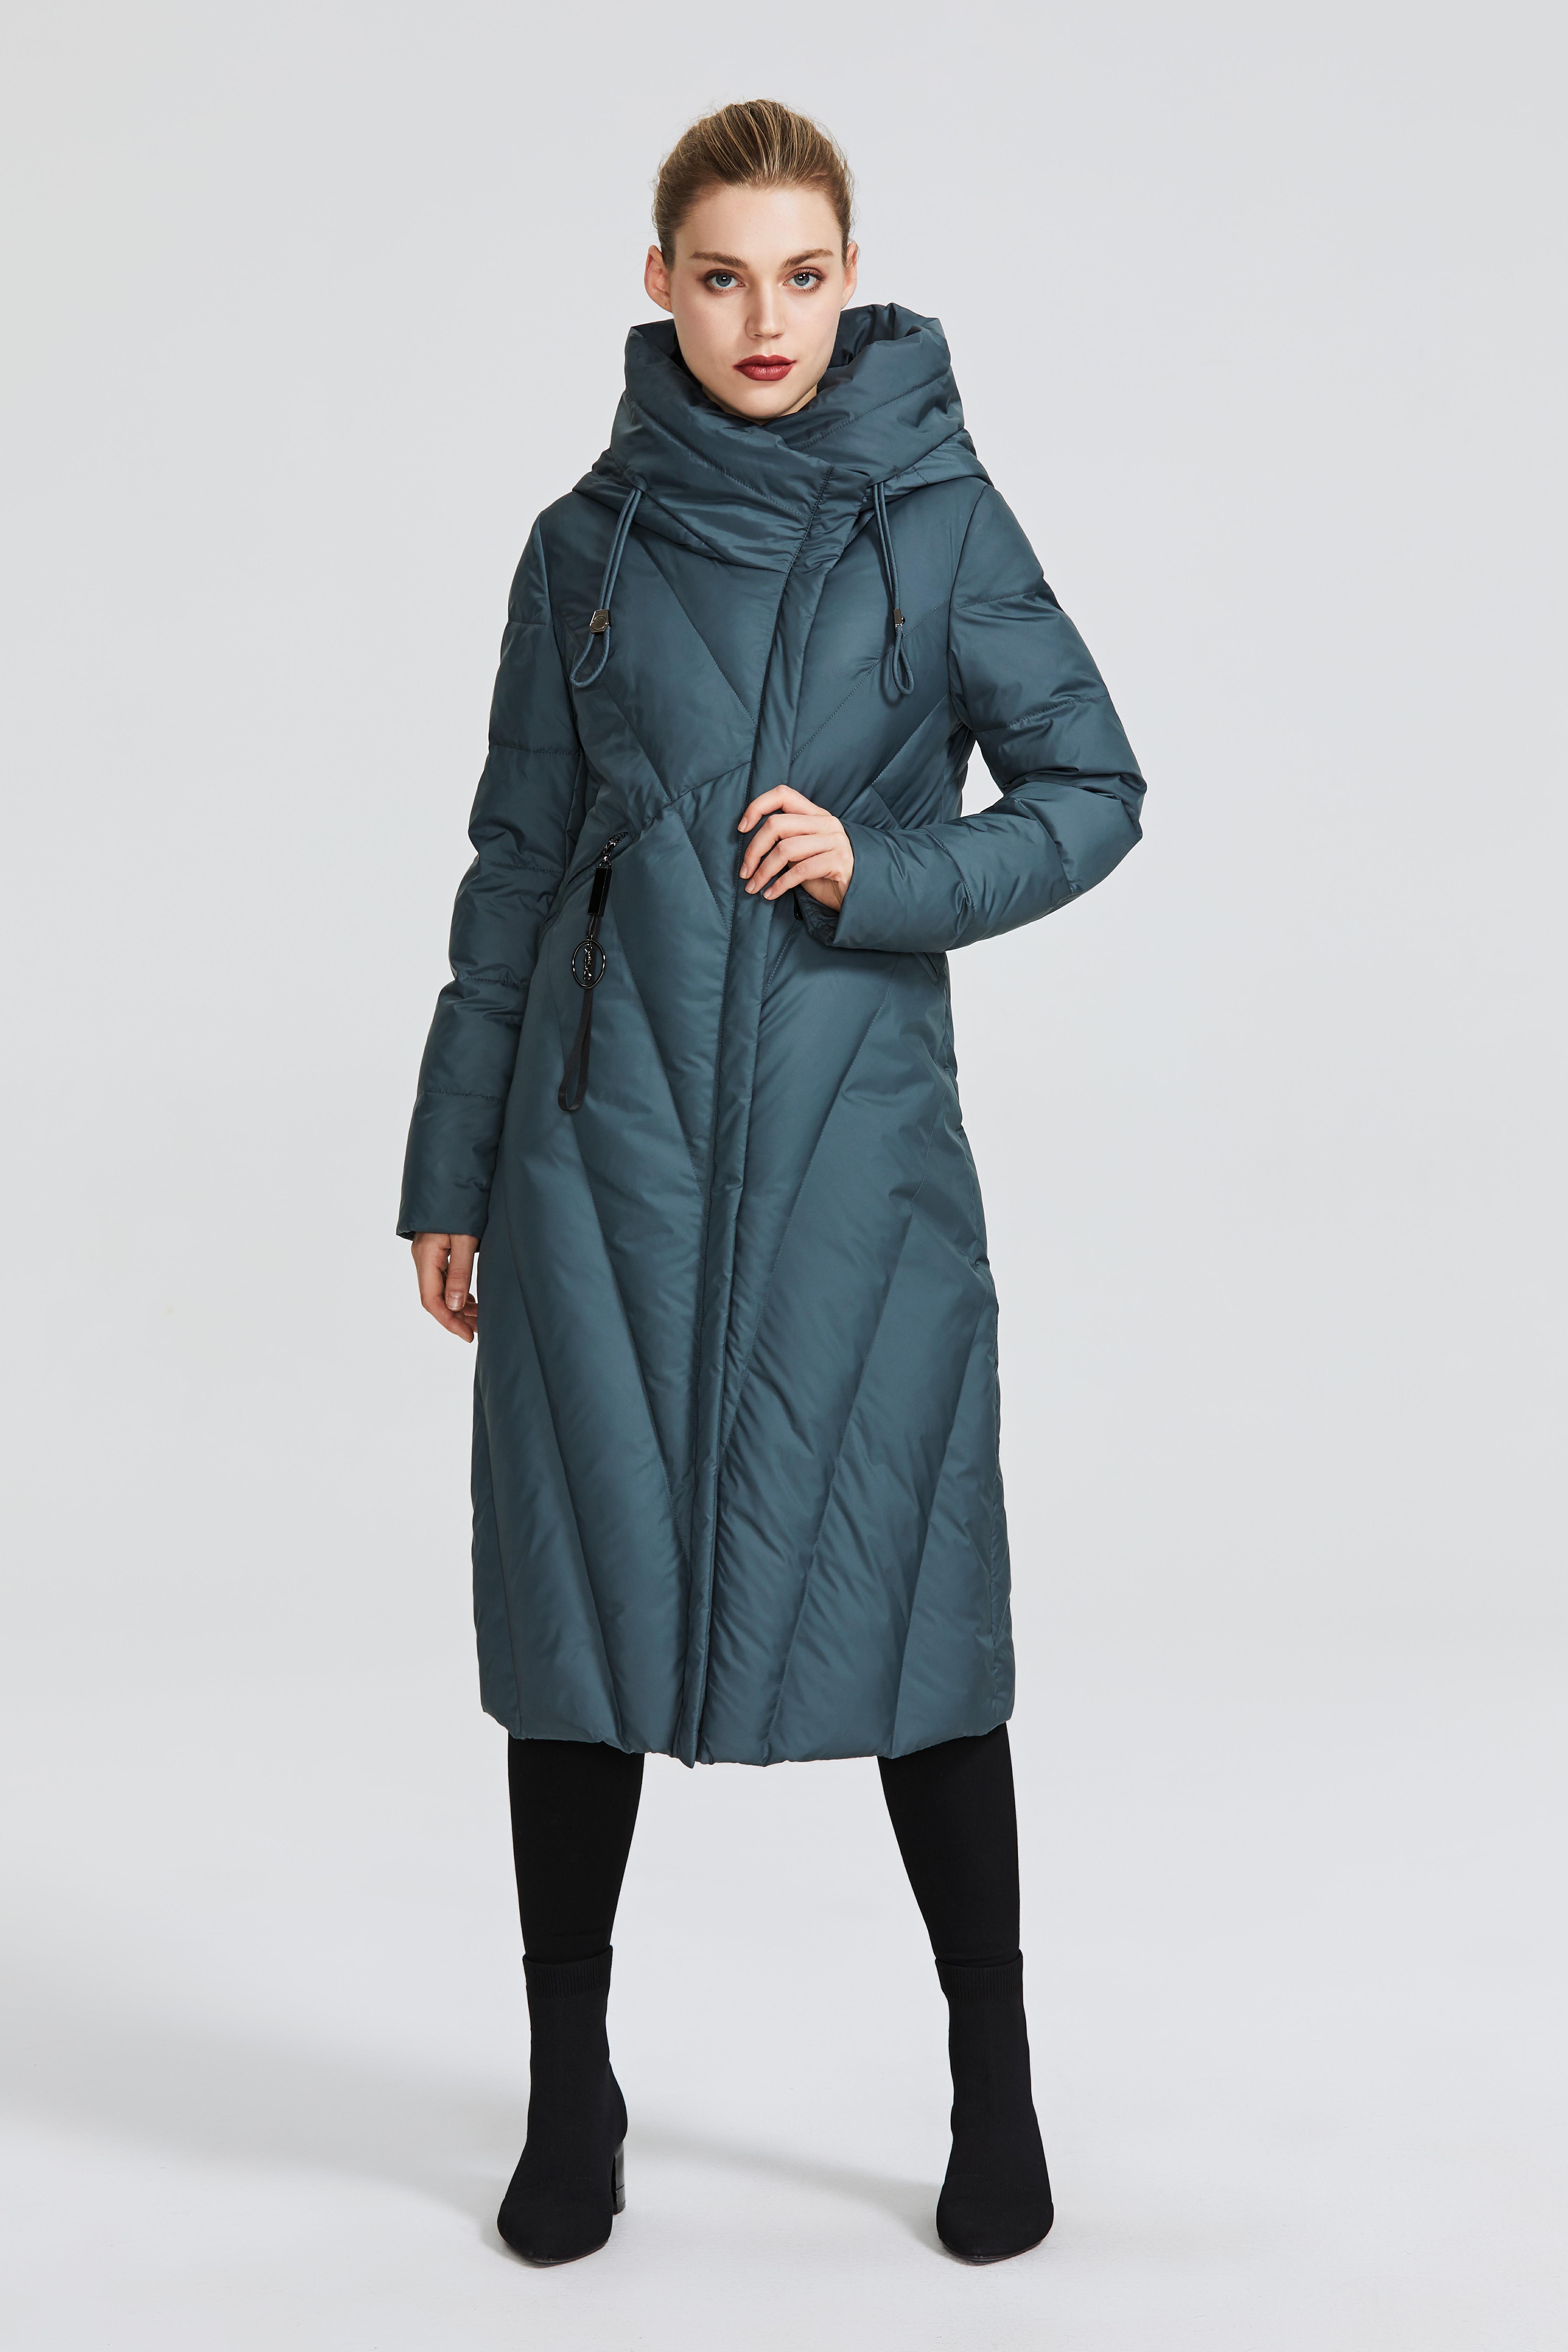 مجموعة معطف نسائي جديد من MIEGOFCE D99266 مع ياقة مقاومة للرياح للنساء